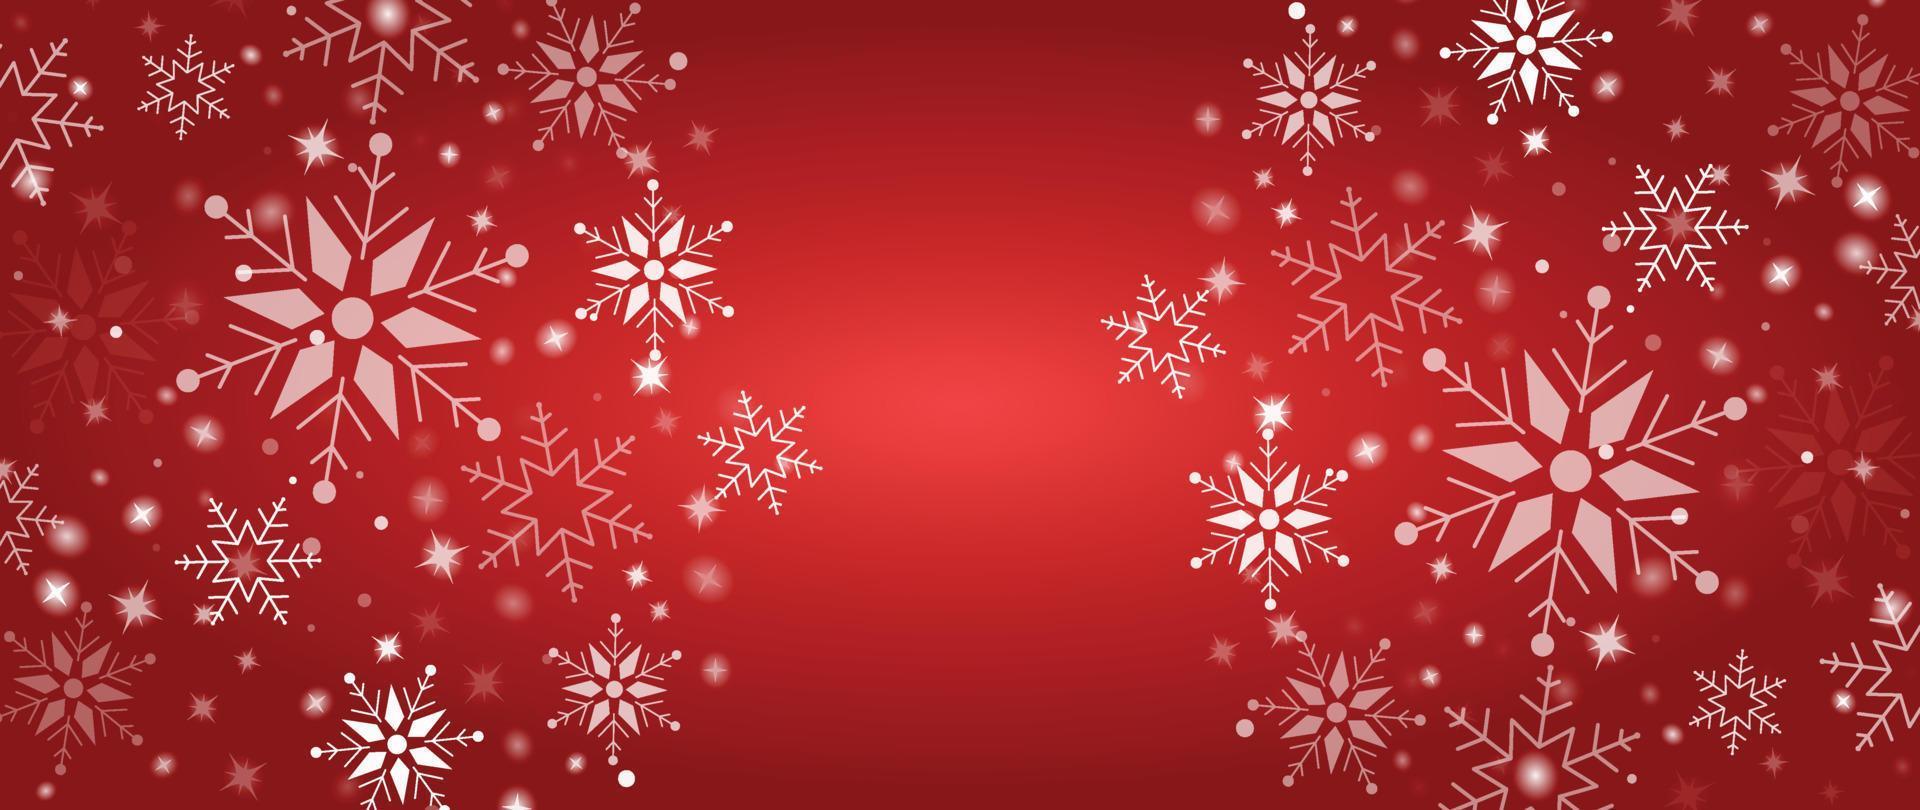 élégante illustration vectorielle de flocon de neige hiver fond. flocon de neige décoratif de luxe et éclat sur fond rouge dégradé. conception adaptée à la carte d'invitation, aux voeux, au papier peint, à l'affiche, à la bannière. vecteur